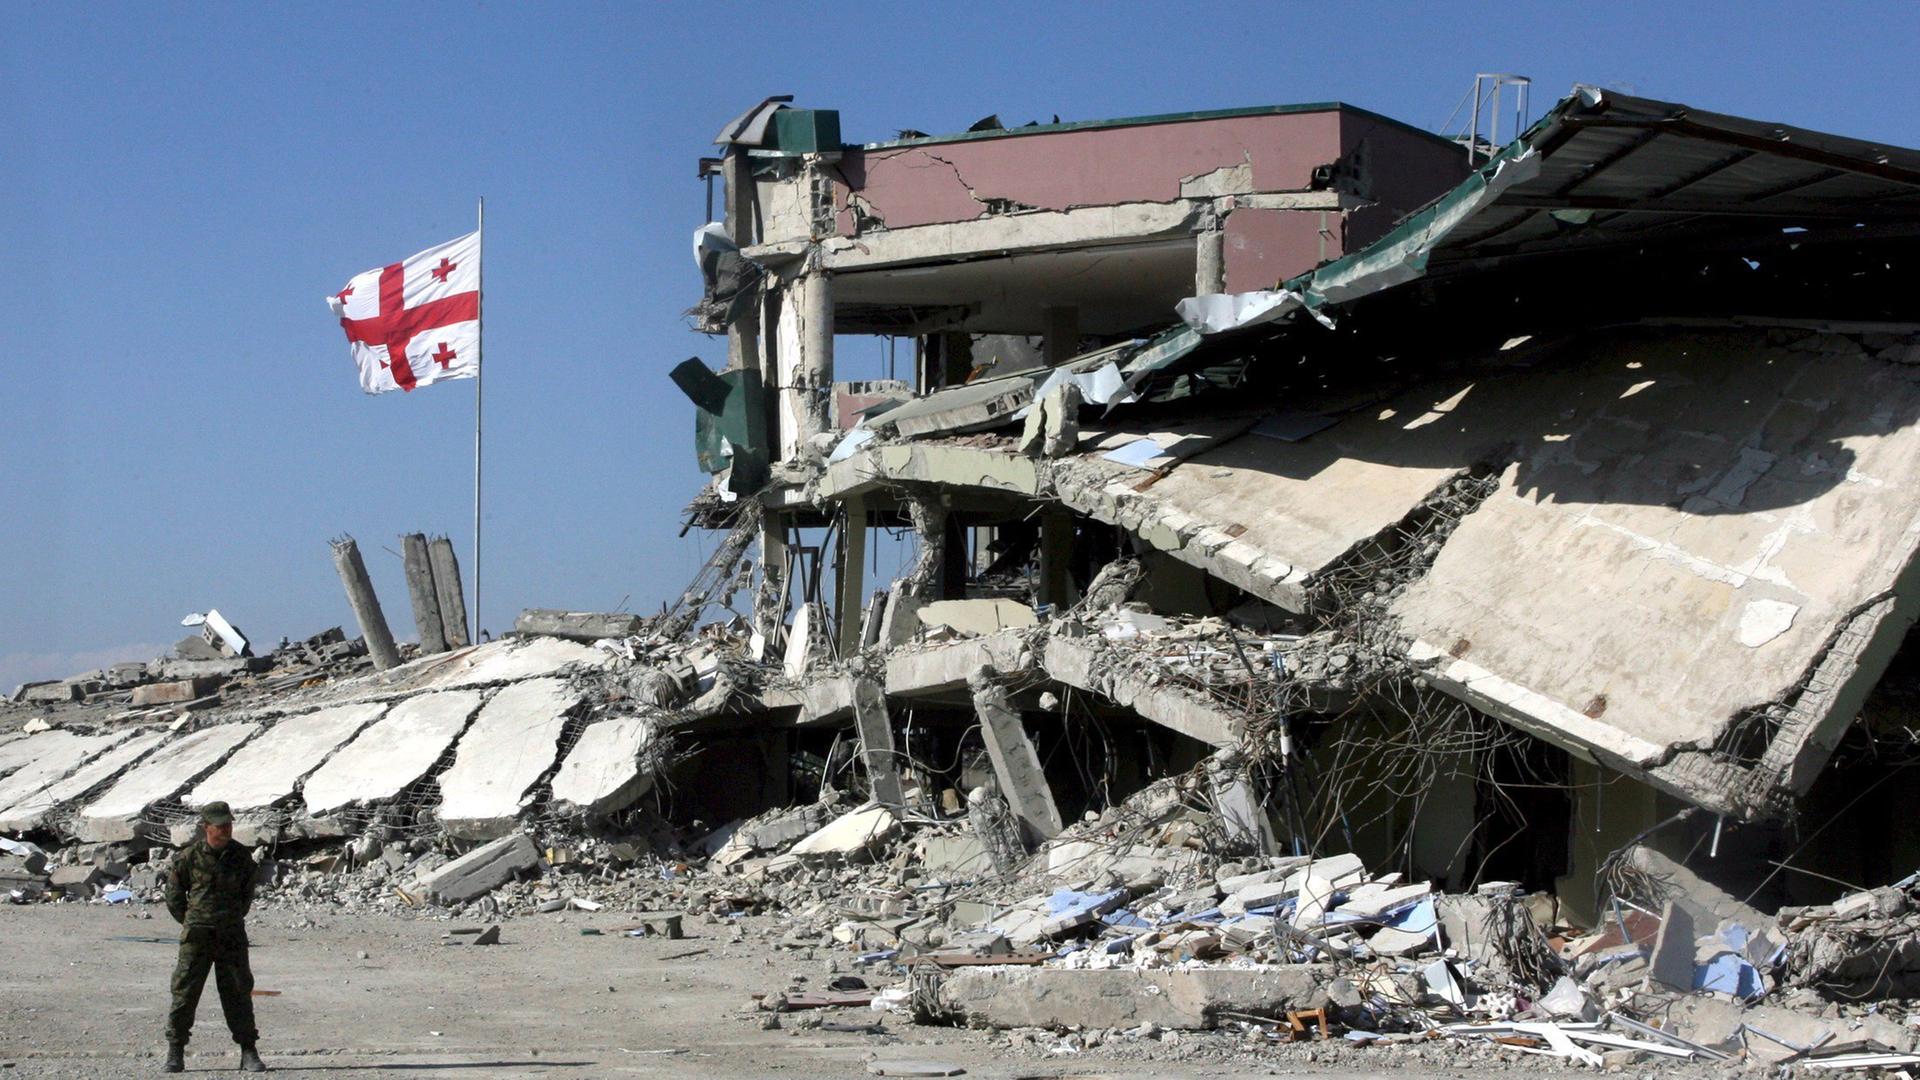 Das Bild zeigt eine zerstörte Militärbasis und eine Flagge von Georgien im Jahr 2008